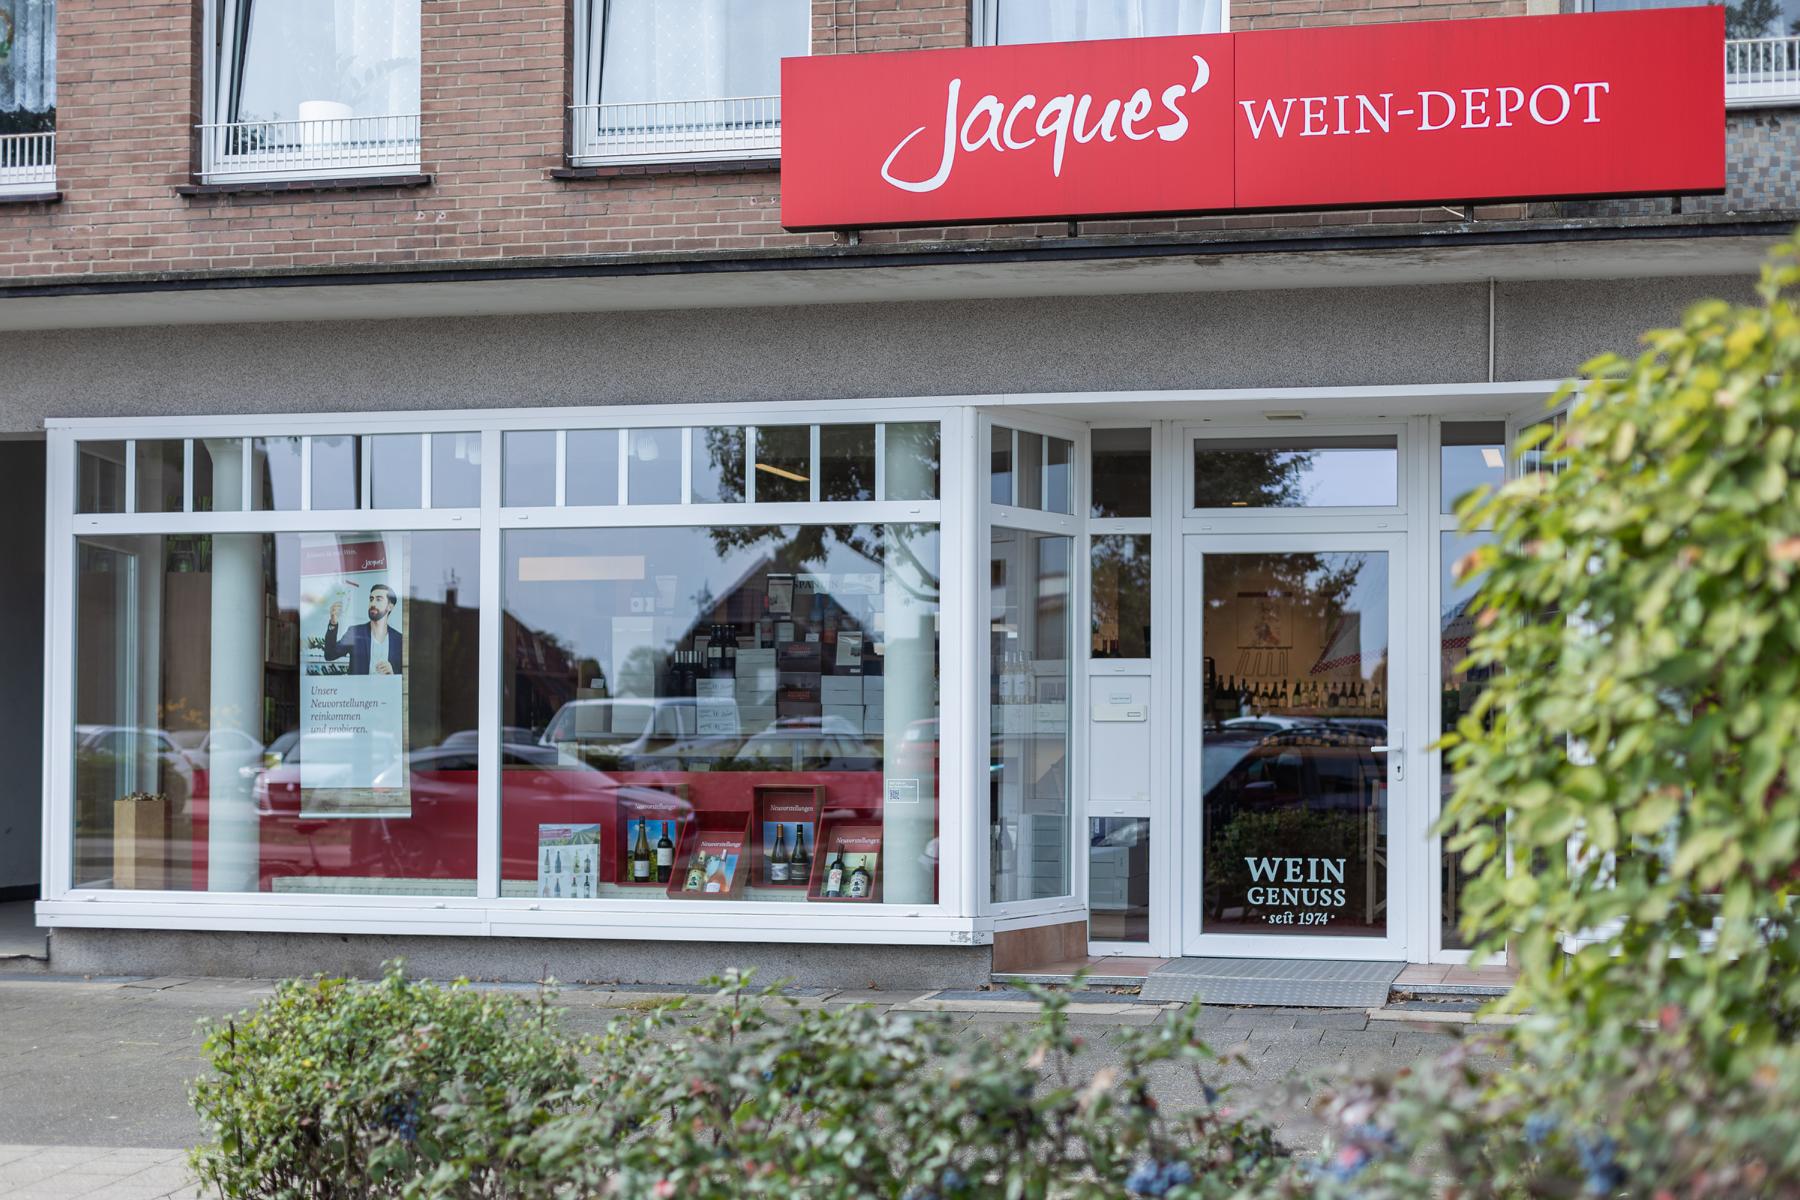 Bilder Jacques’ Wein-Depot Dorsten-Holsterhausen